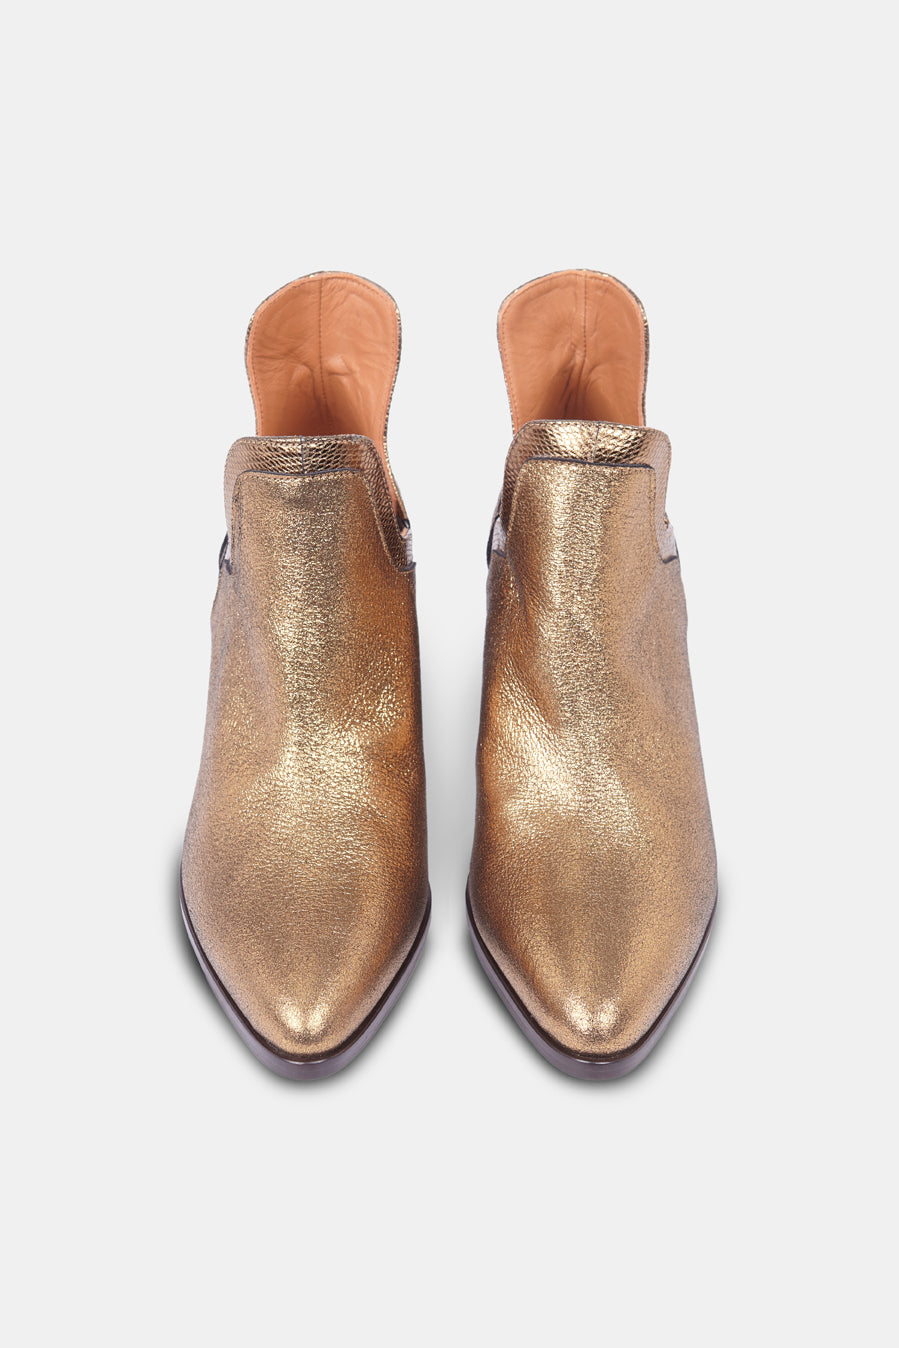 Botines Frida Boots Special Edition color oro viejo tacón 7 centímetros 2 - Micuir